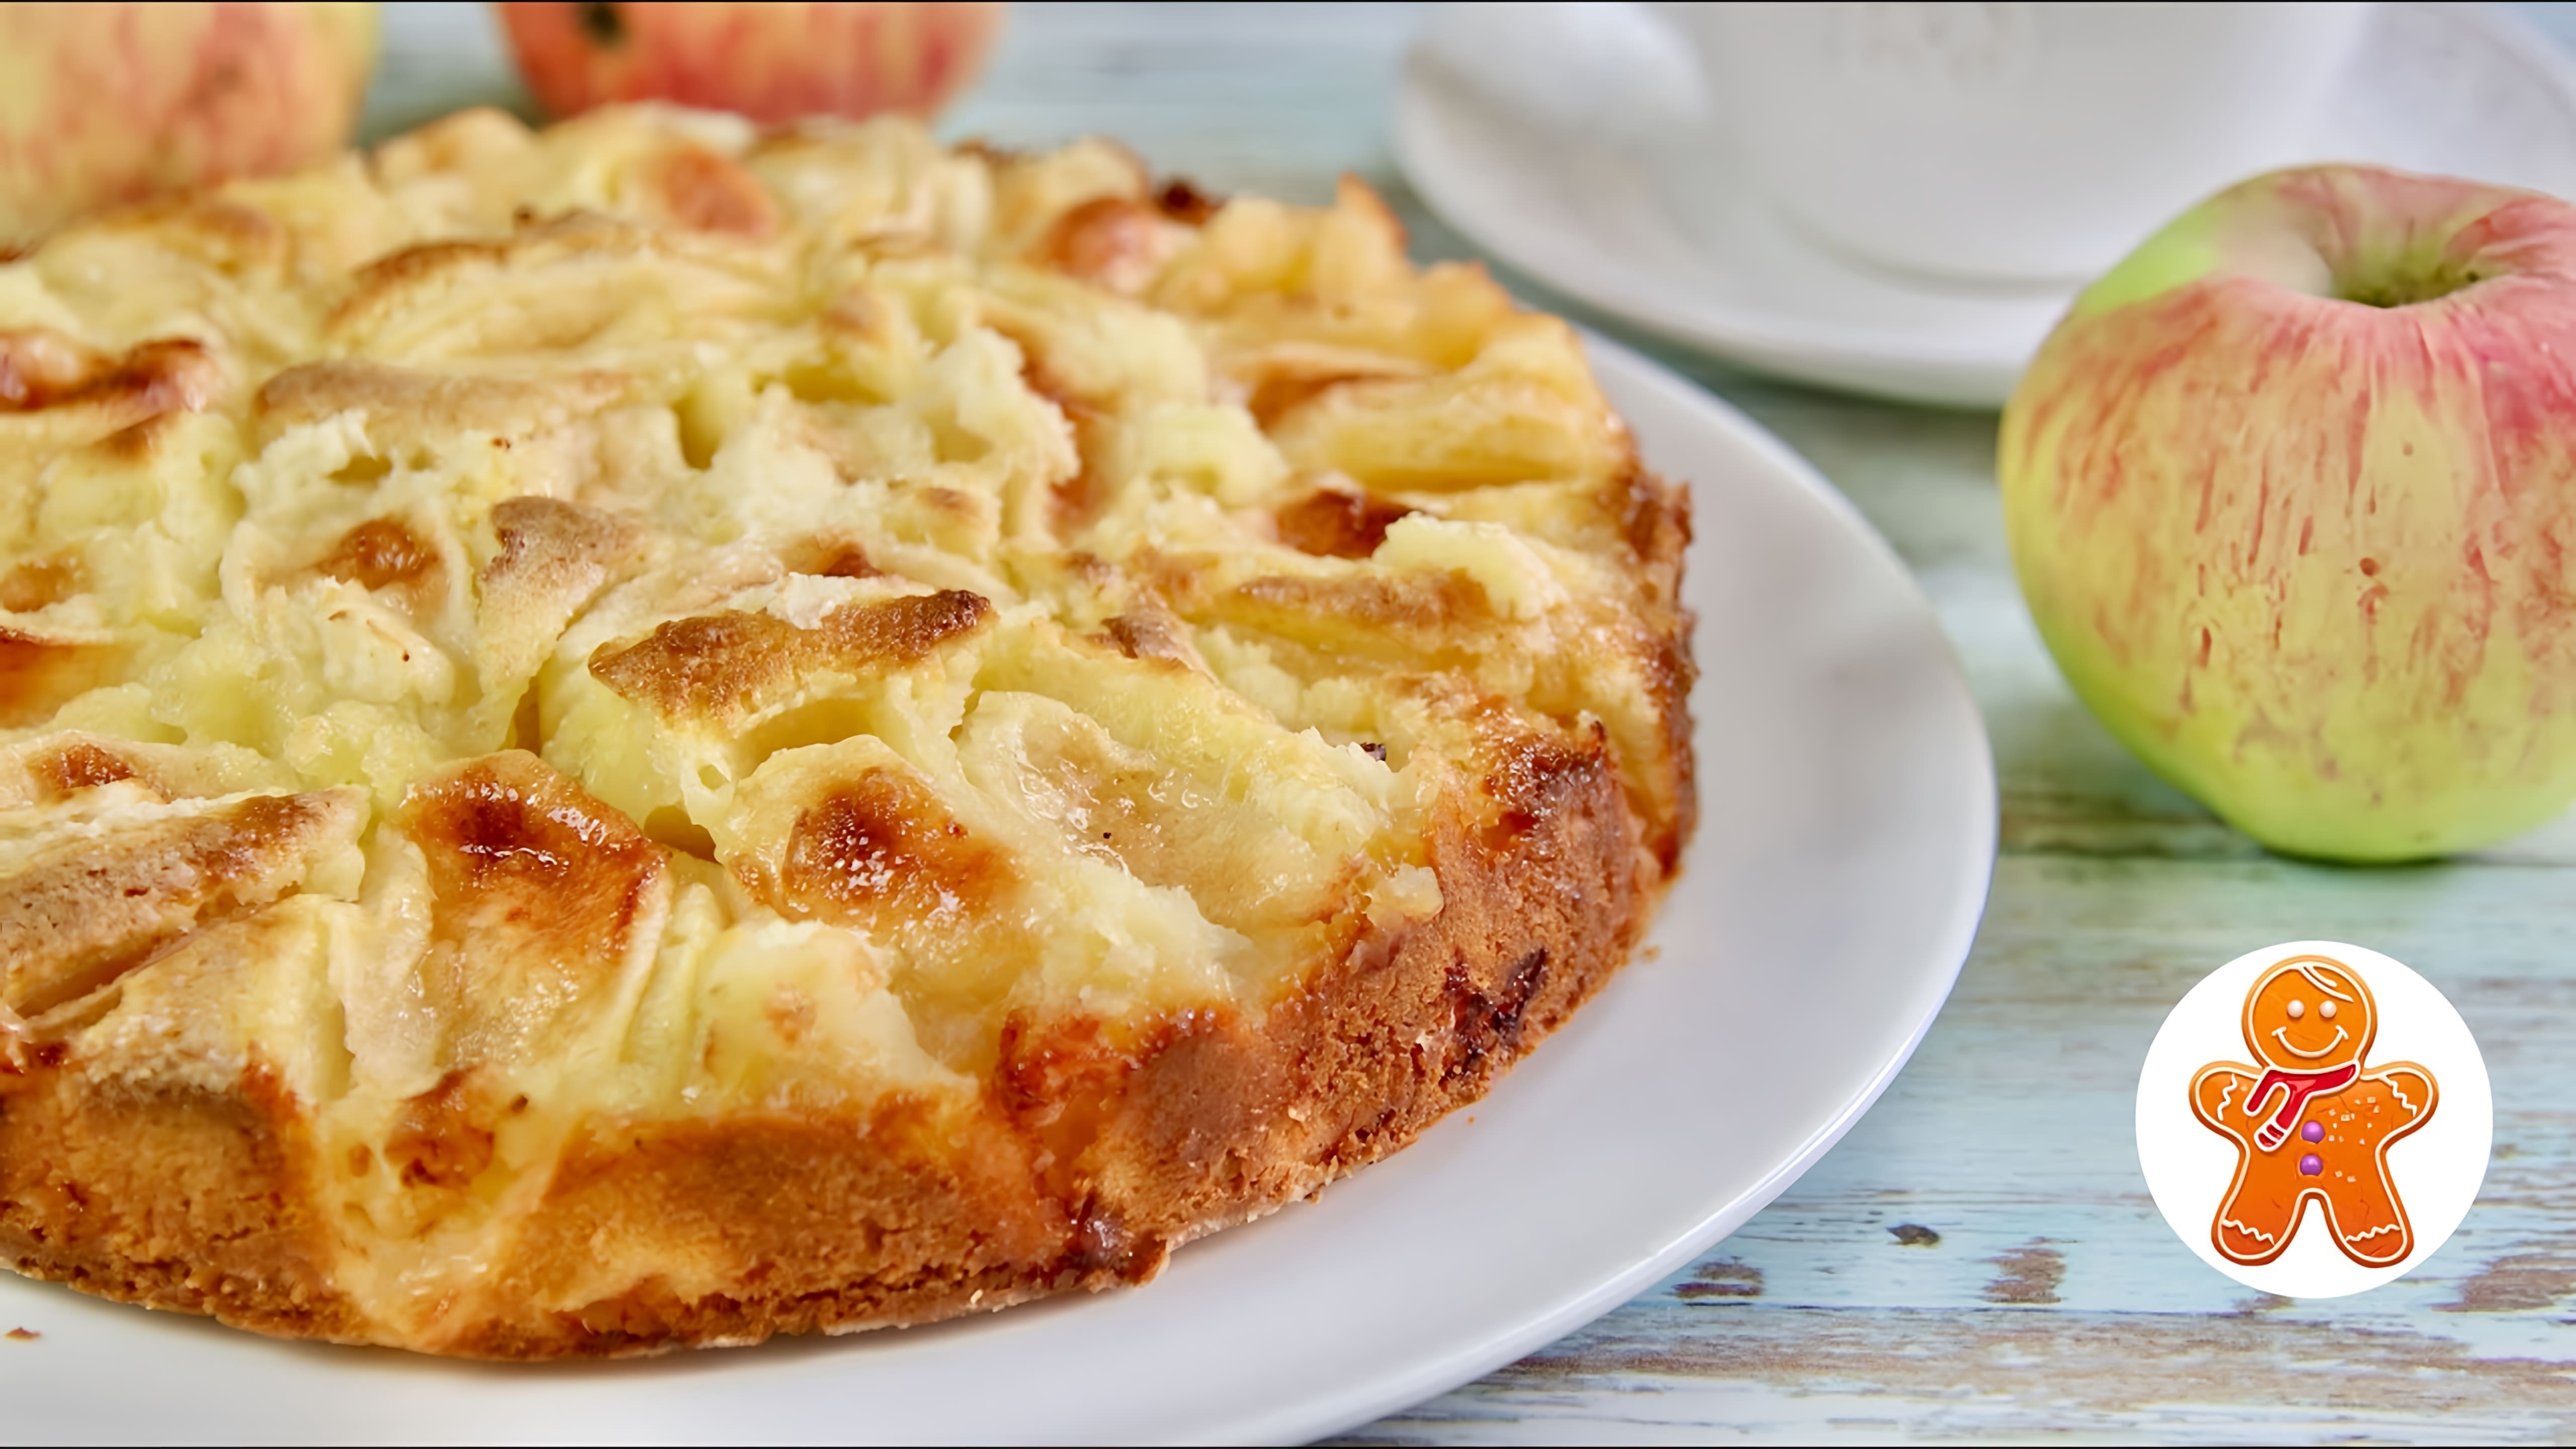 В этом видео демонстрируется рецепт итальянского яблочного пирога